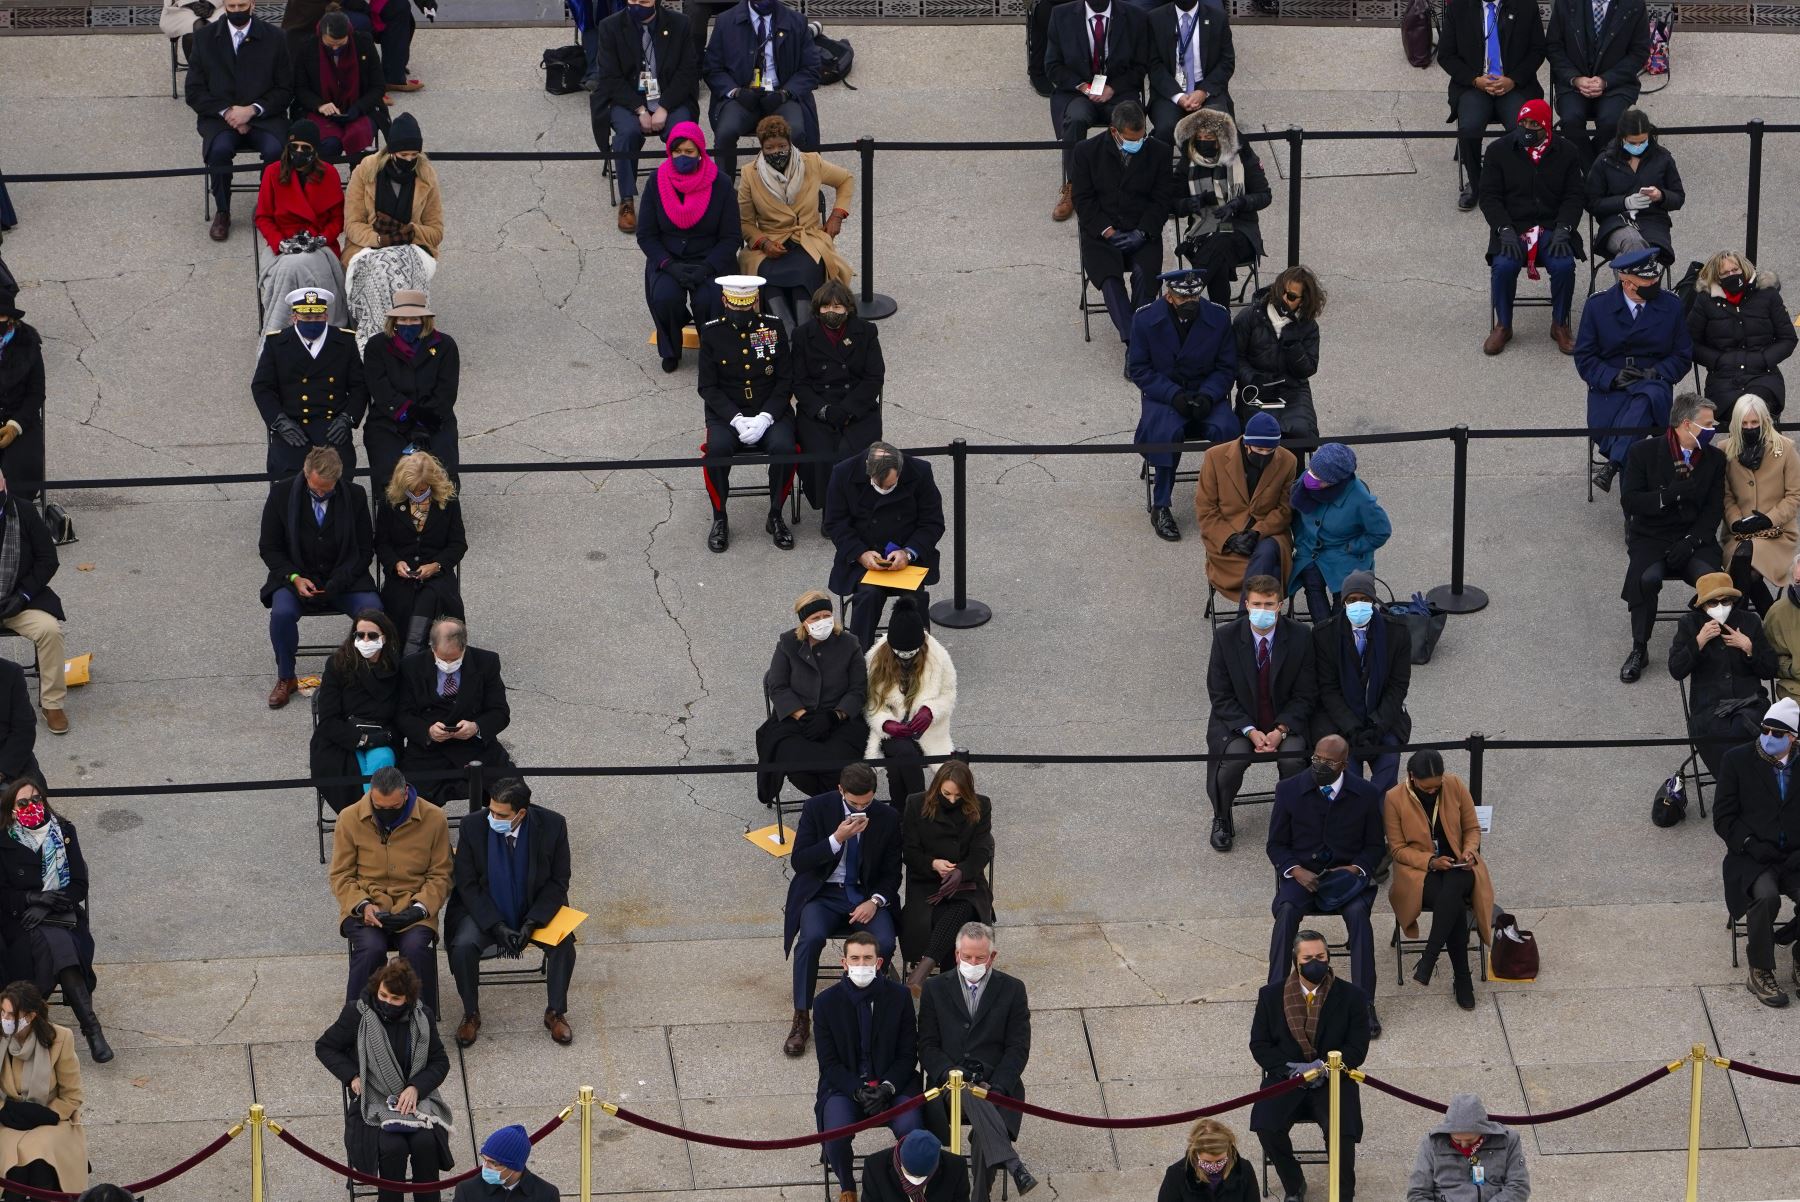 Los invitados se sientan separados unos de otros, respetando el distanciamiento social, en la inauguración presidencial en el Capitolio de los Estados Unidos en Washington. Foto: AFP